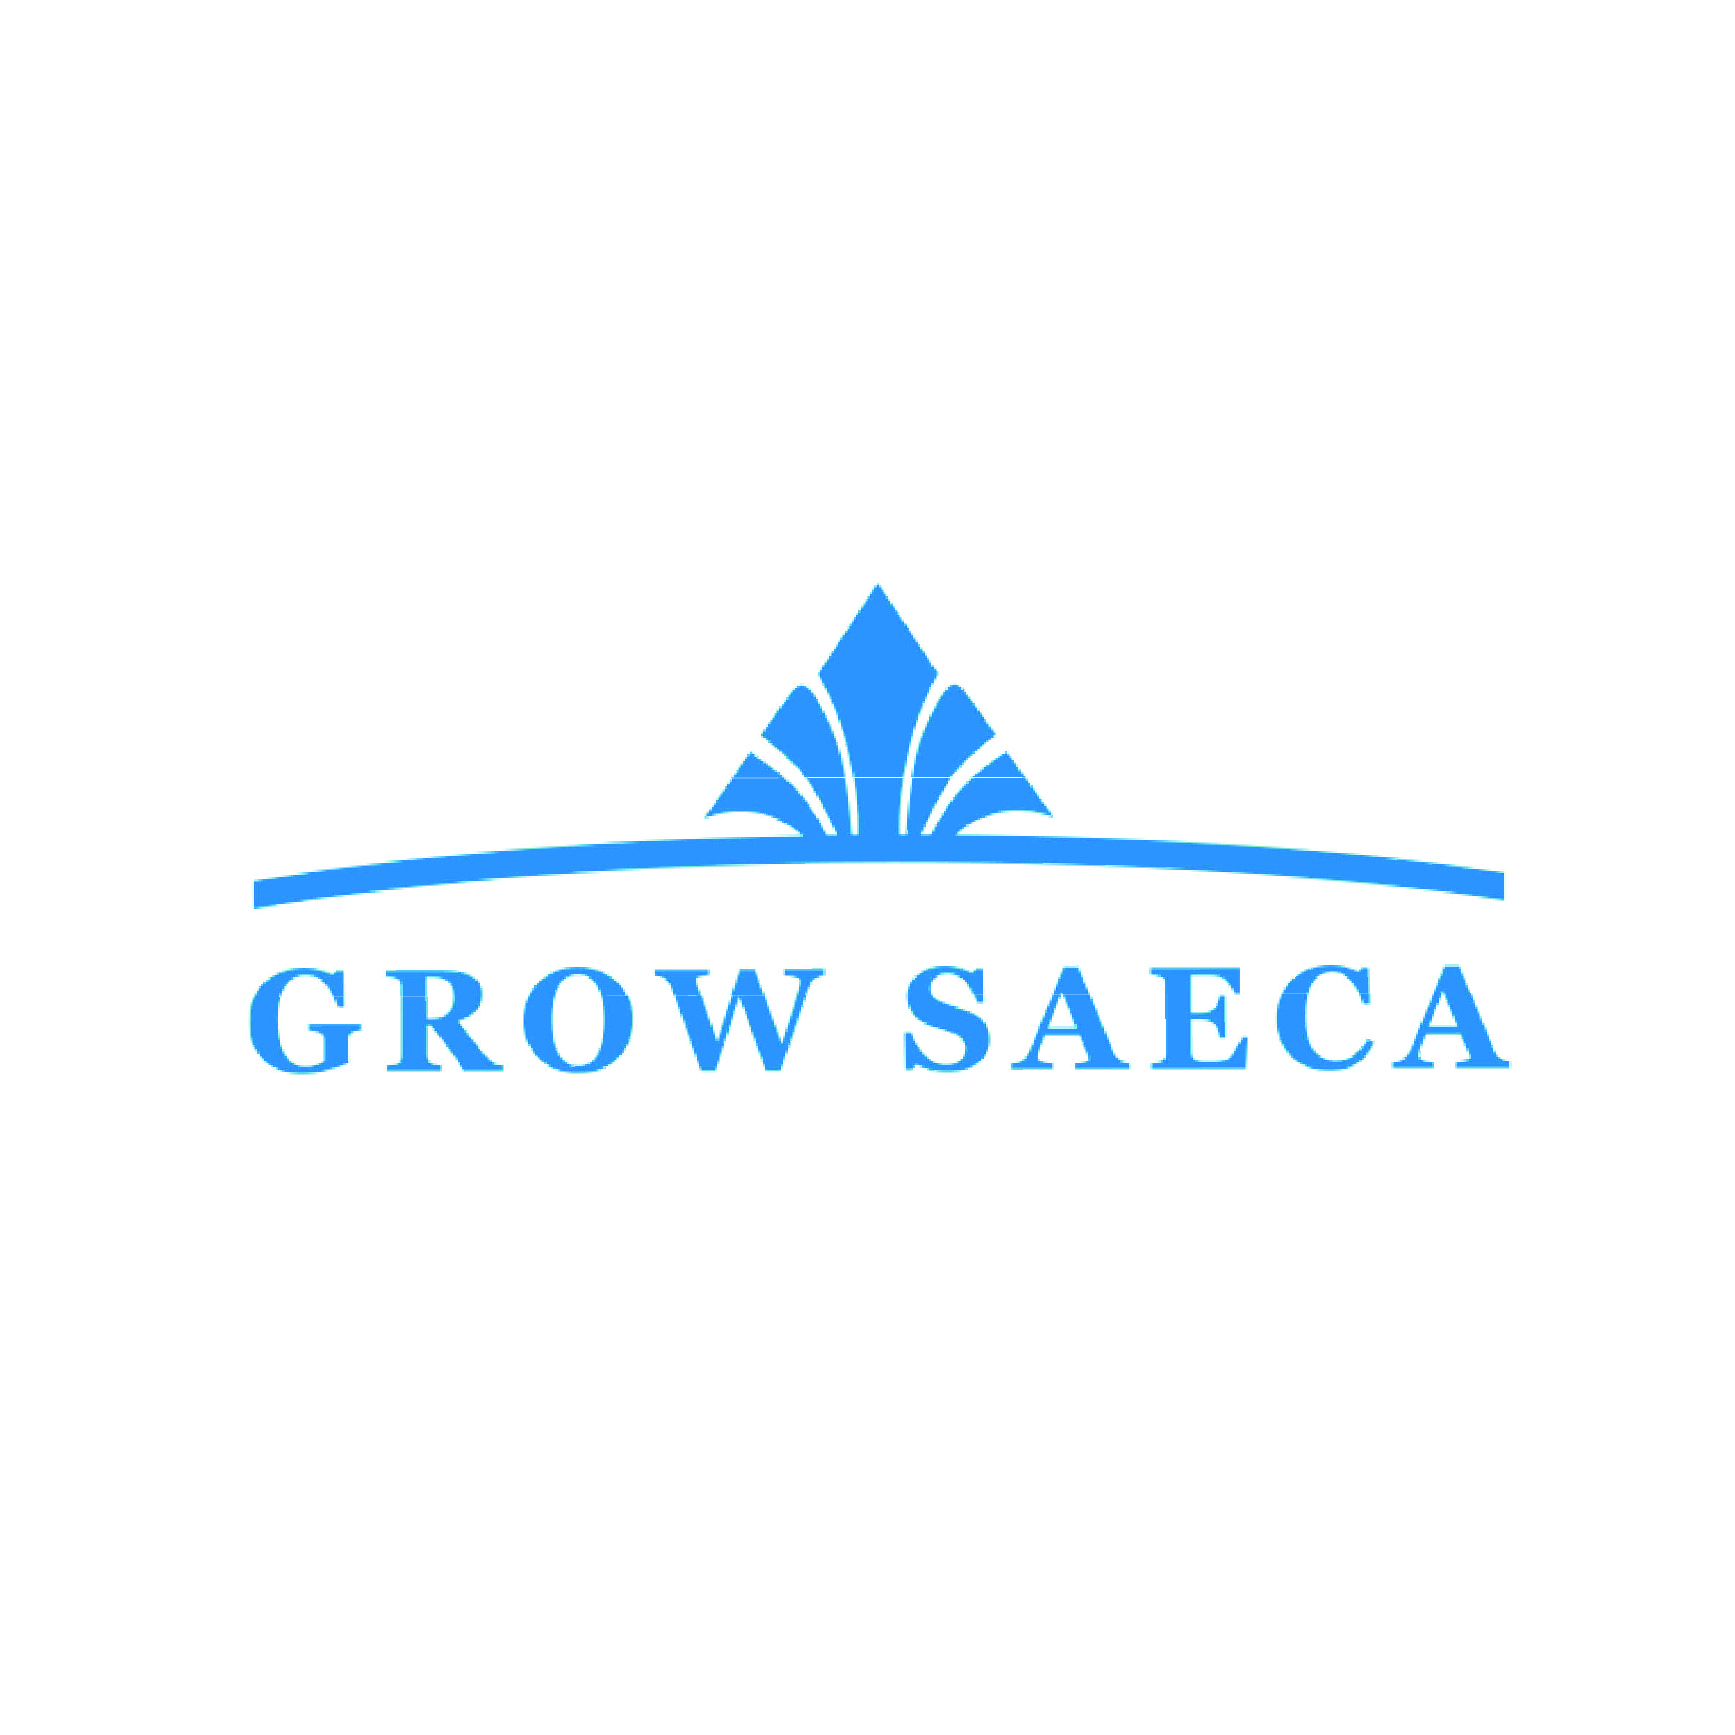 GROW S.A.E.C.A.